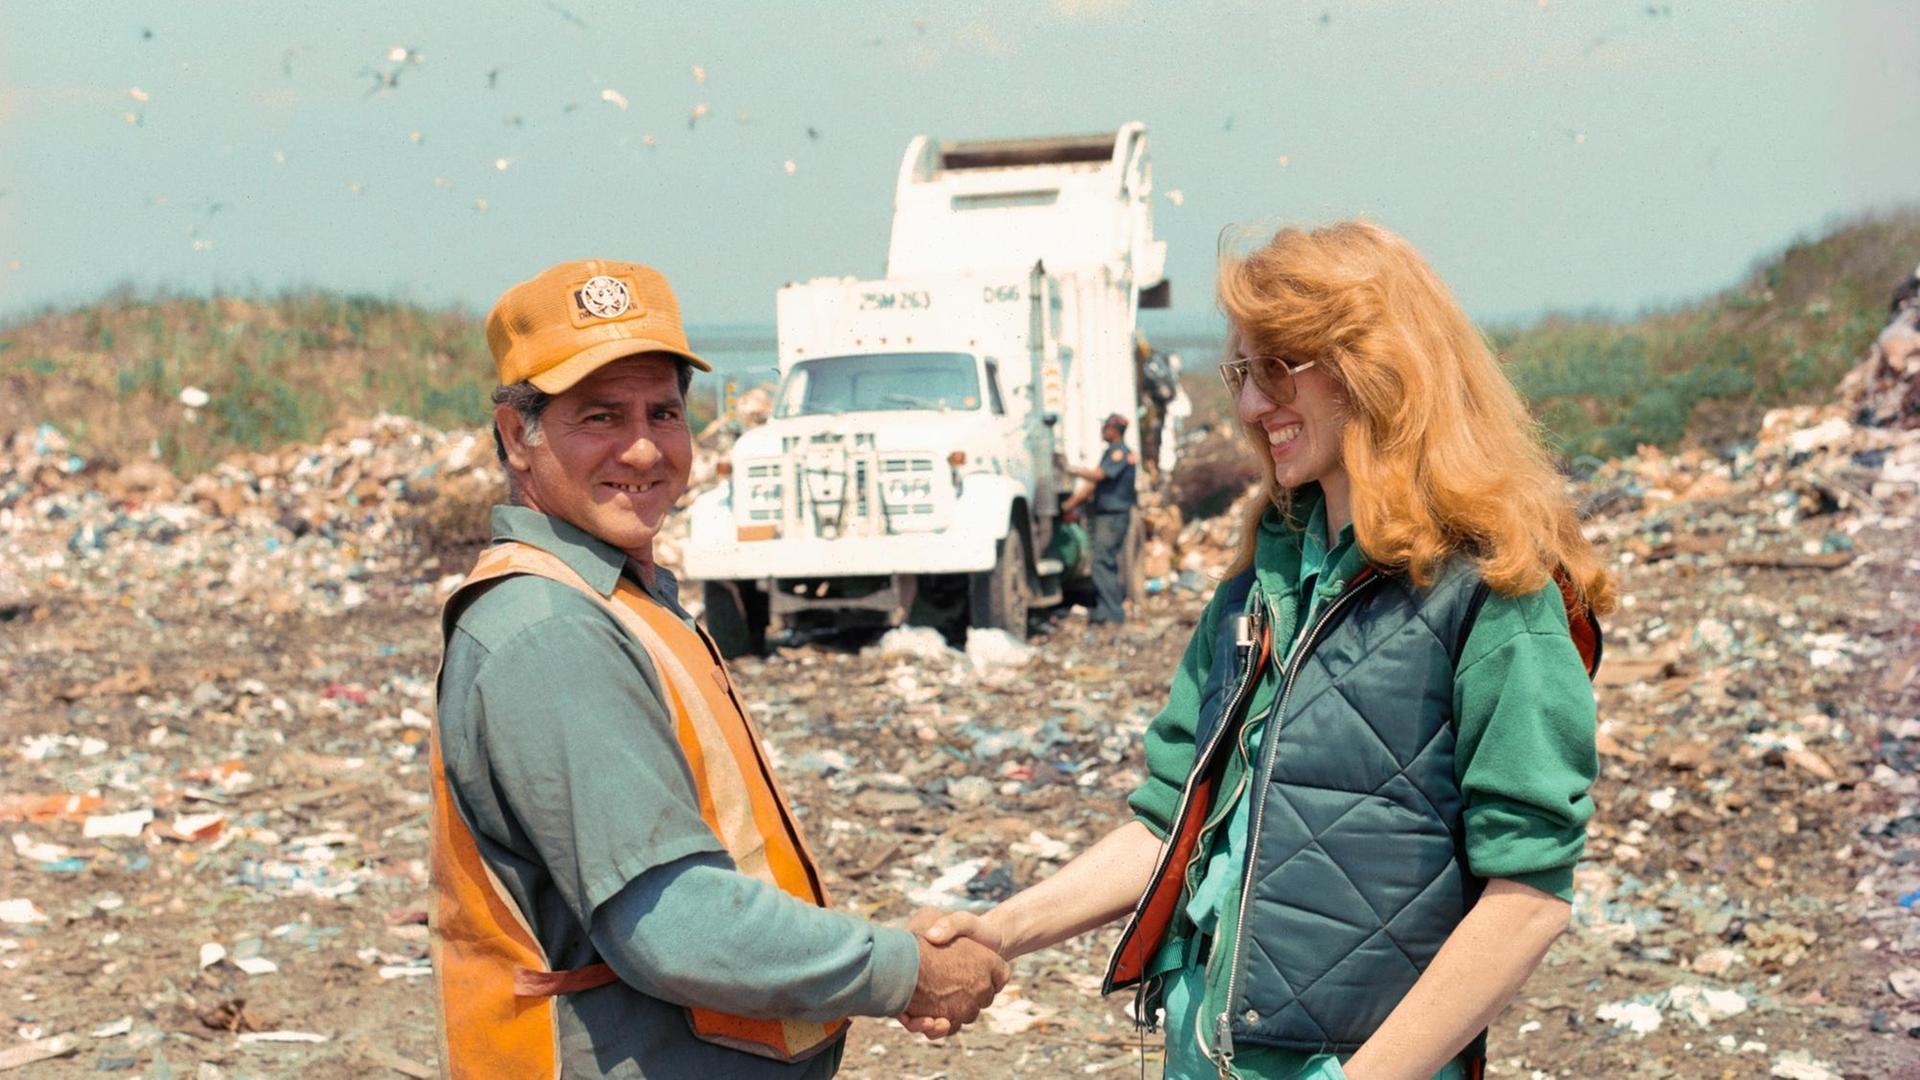 Mierle Laderman Ukeles Touch Sanitation Performance, 1979-80 July 24, 1979-June 26, 1980: Die Künstlerin und ein Müllmann geben sich die Hand auf einer Mülldeponie, im Hintergrund sind ein Müllwagen und Müllberg zu sehen.